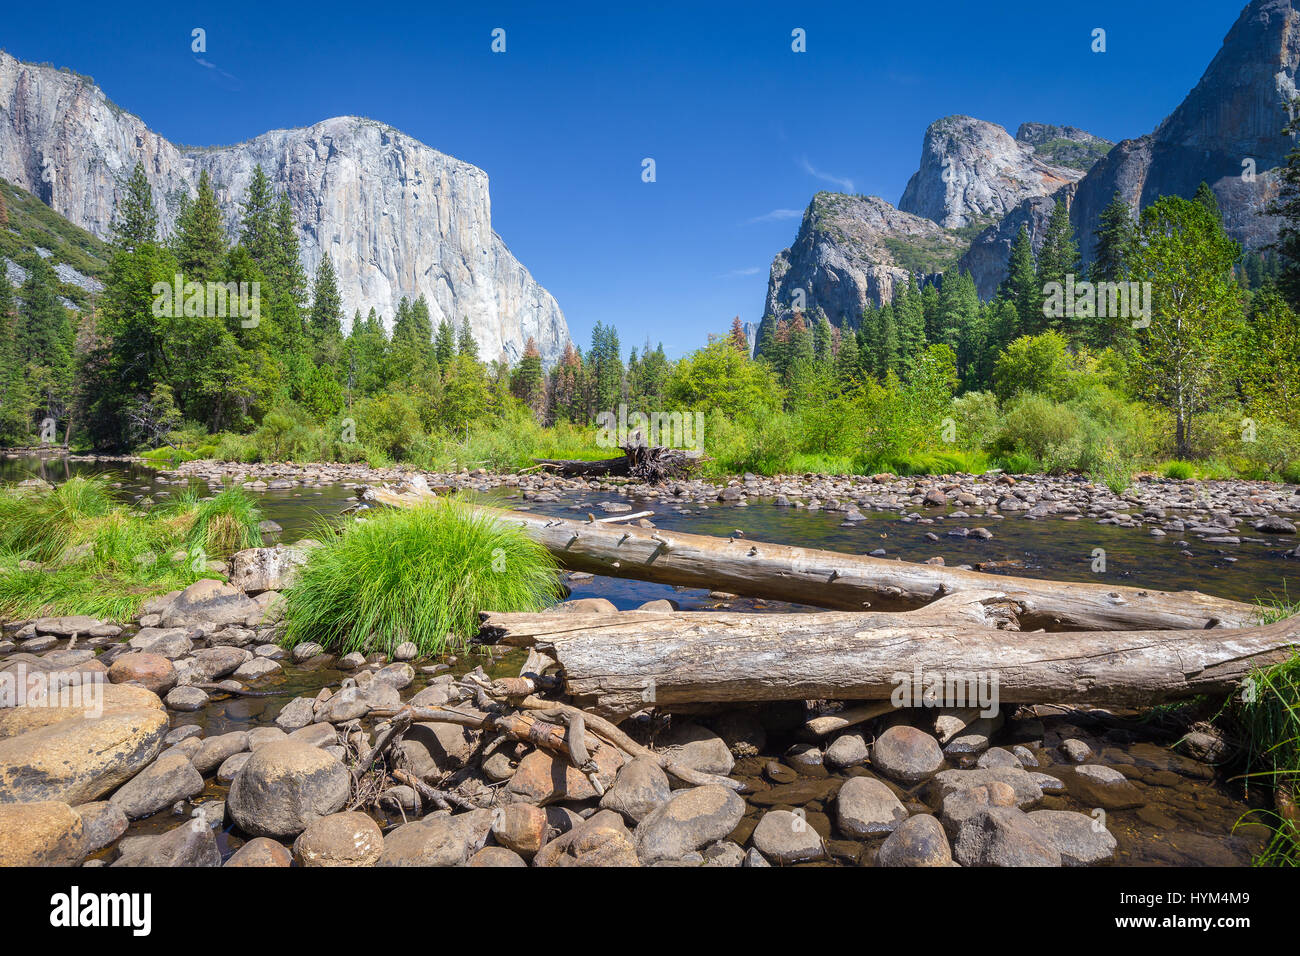 Visualizzazione classica di scenic Yosemite Valley con il famoso El Capitan arrampicata su roccia vertice e idilliaco fiume Merced in una giornata di sole con cielo blu e nuvole in Foto Stock